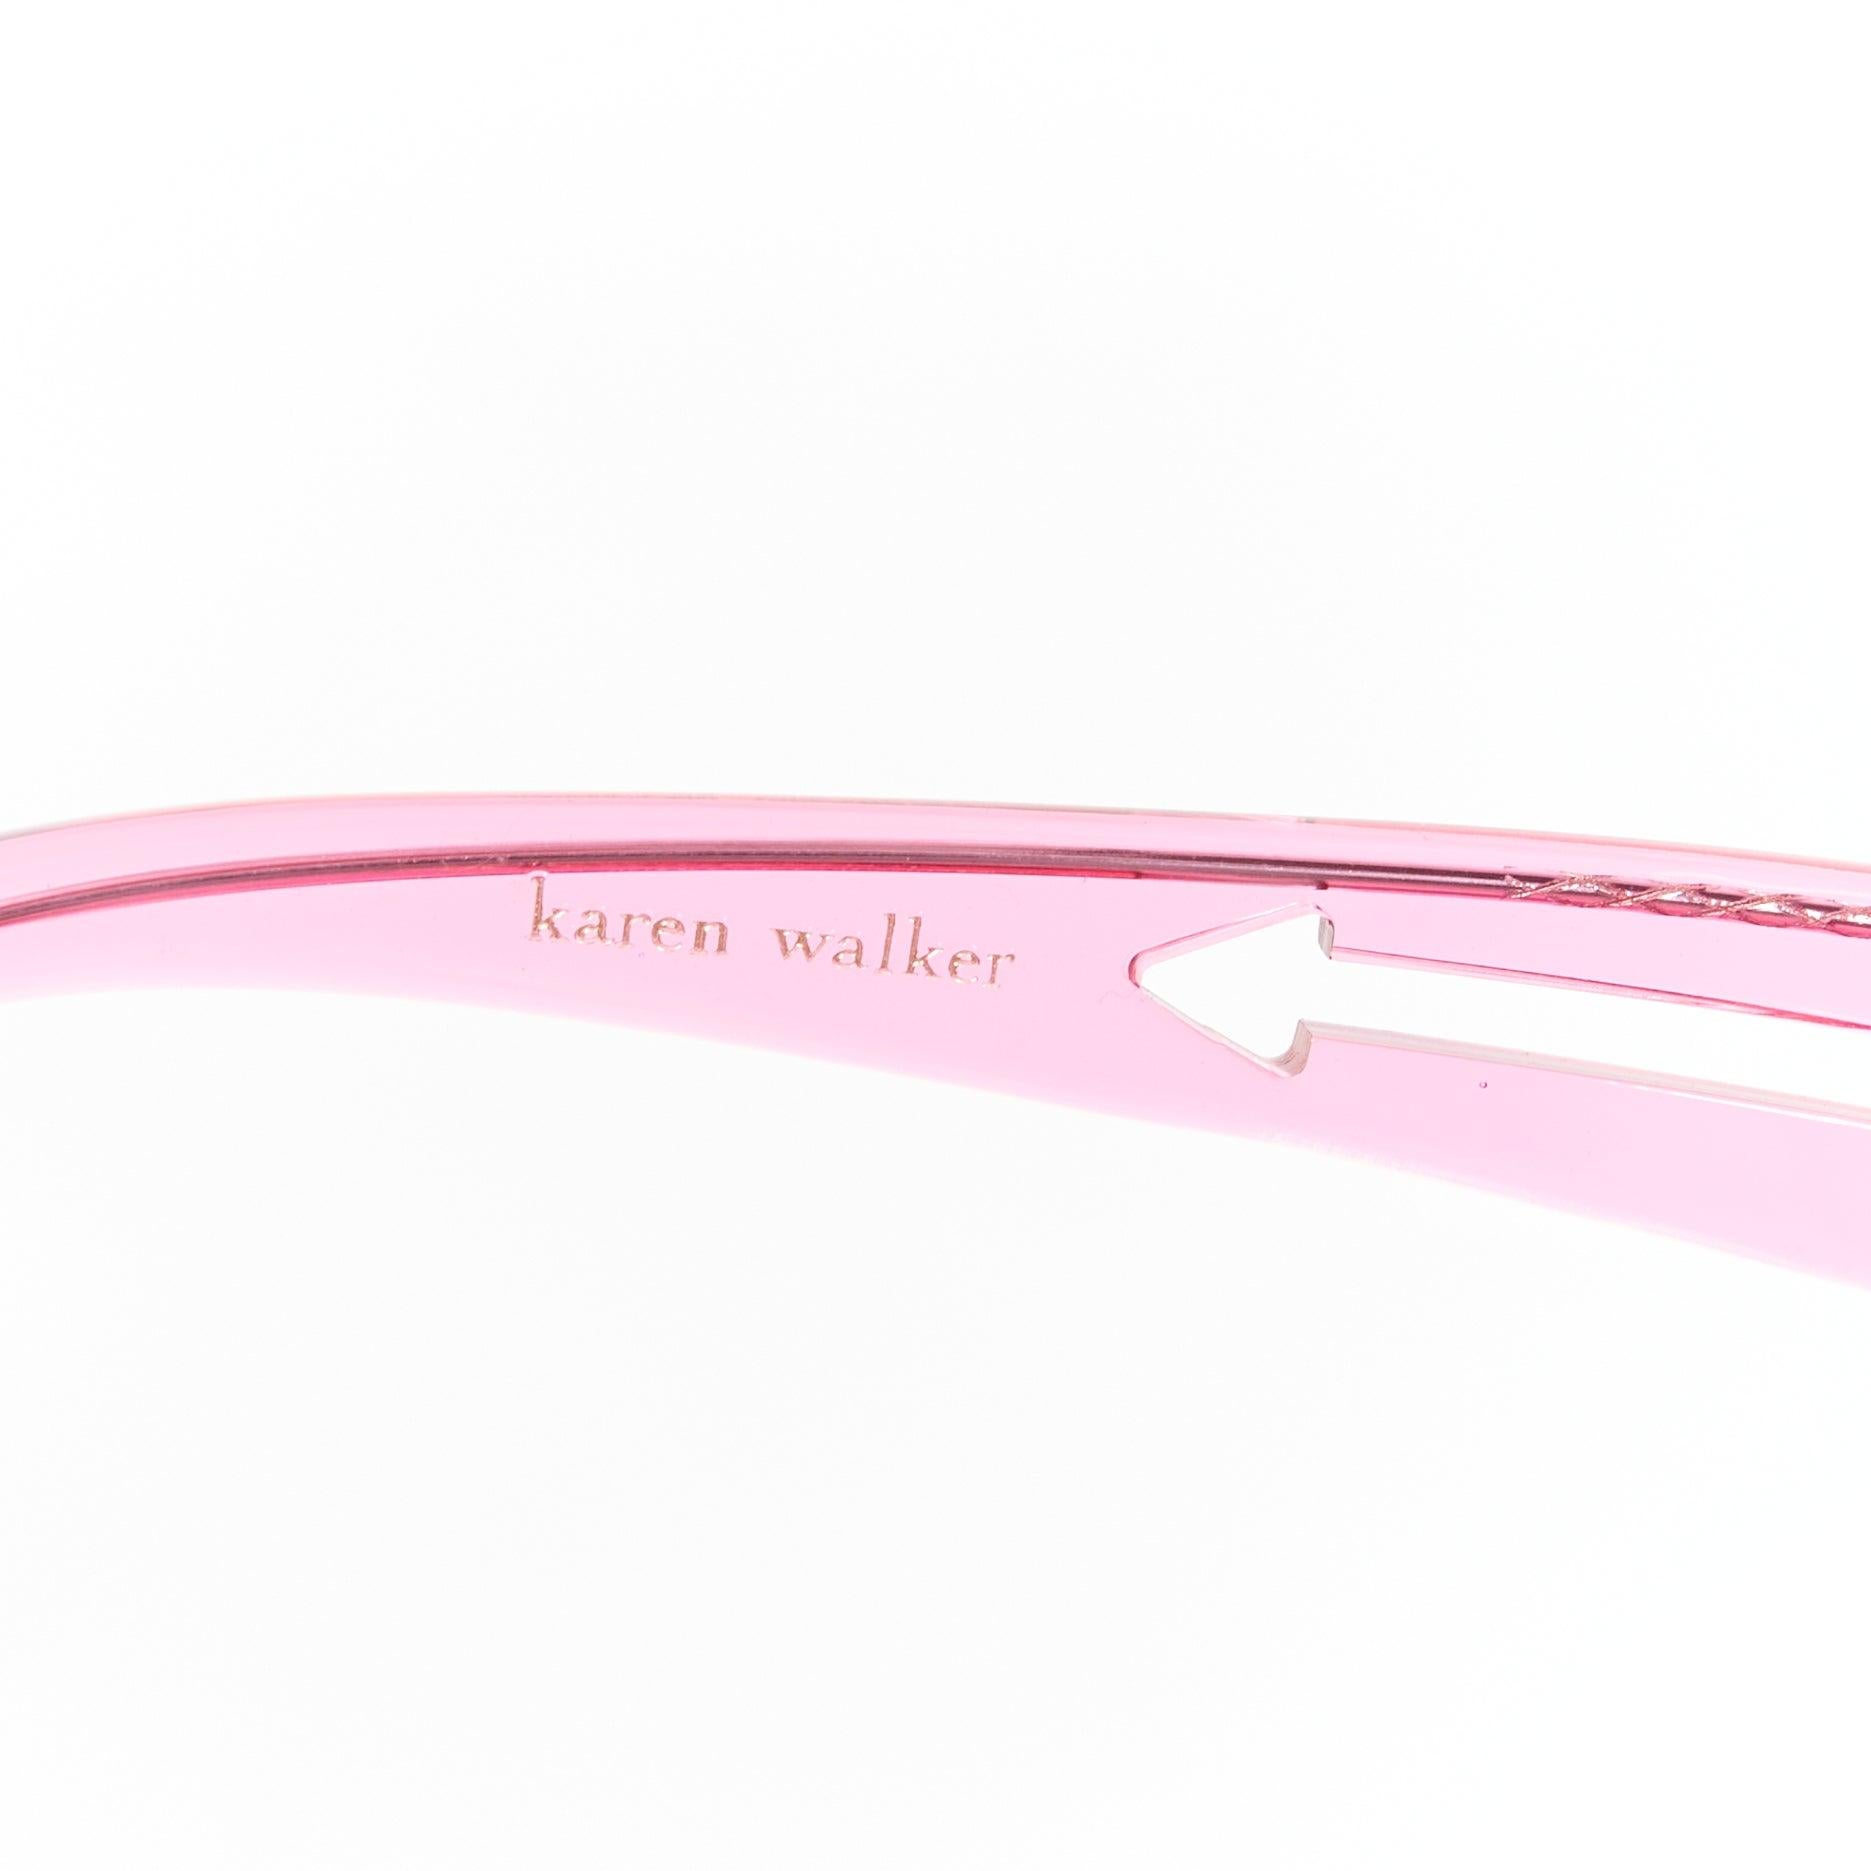 KAREN WALKER Bunny 1101405 clear pink round frame dark blue lens sunglasses For Sale 2